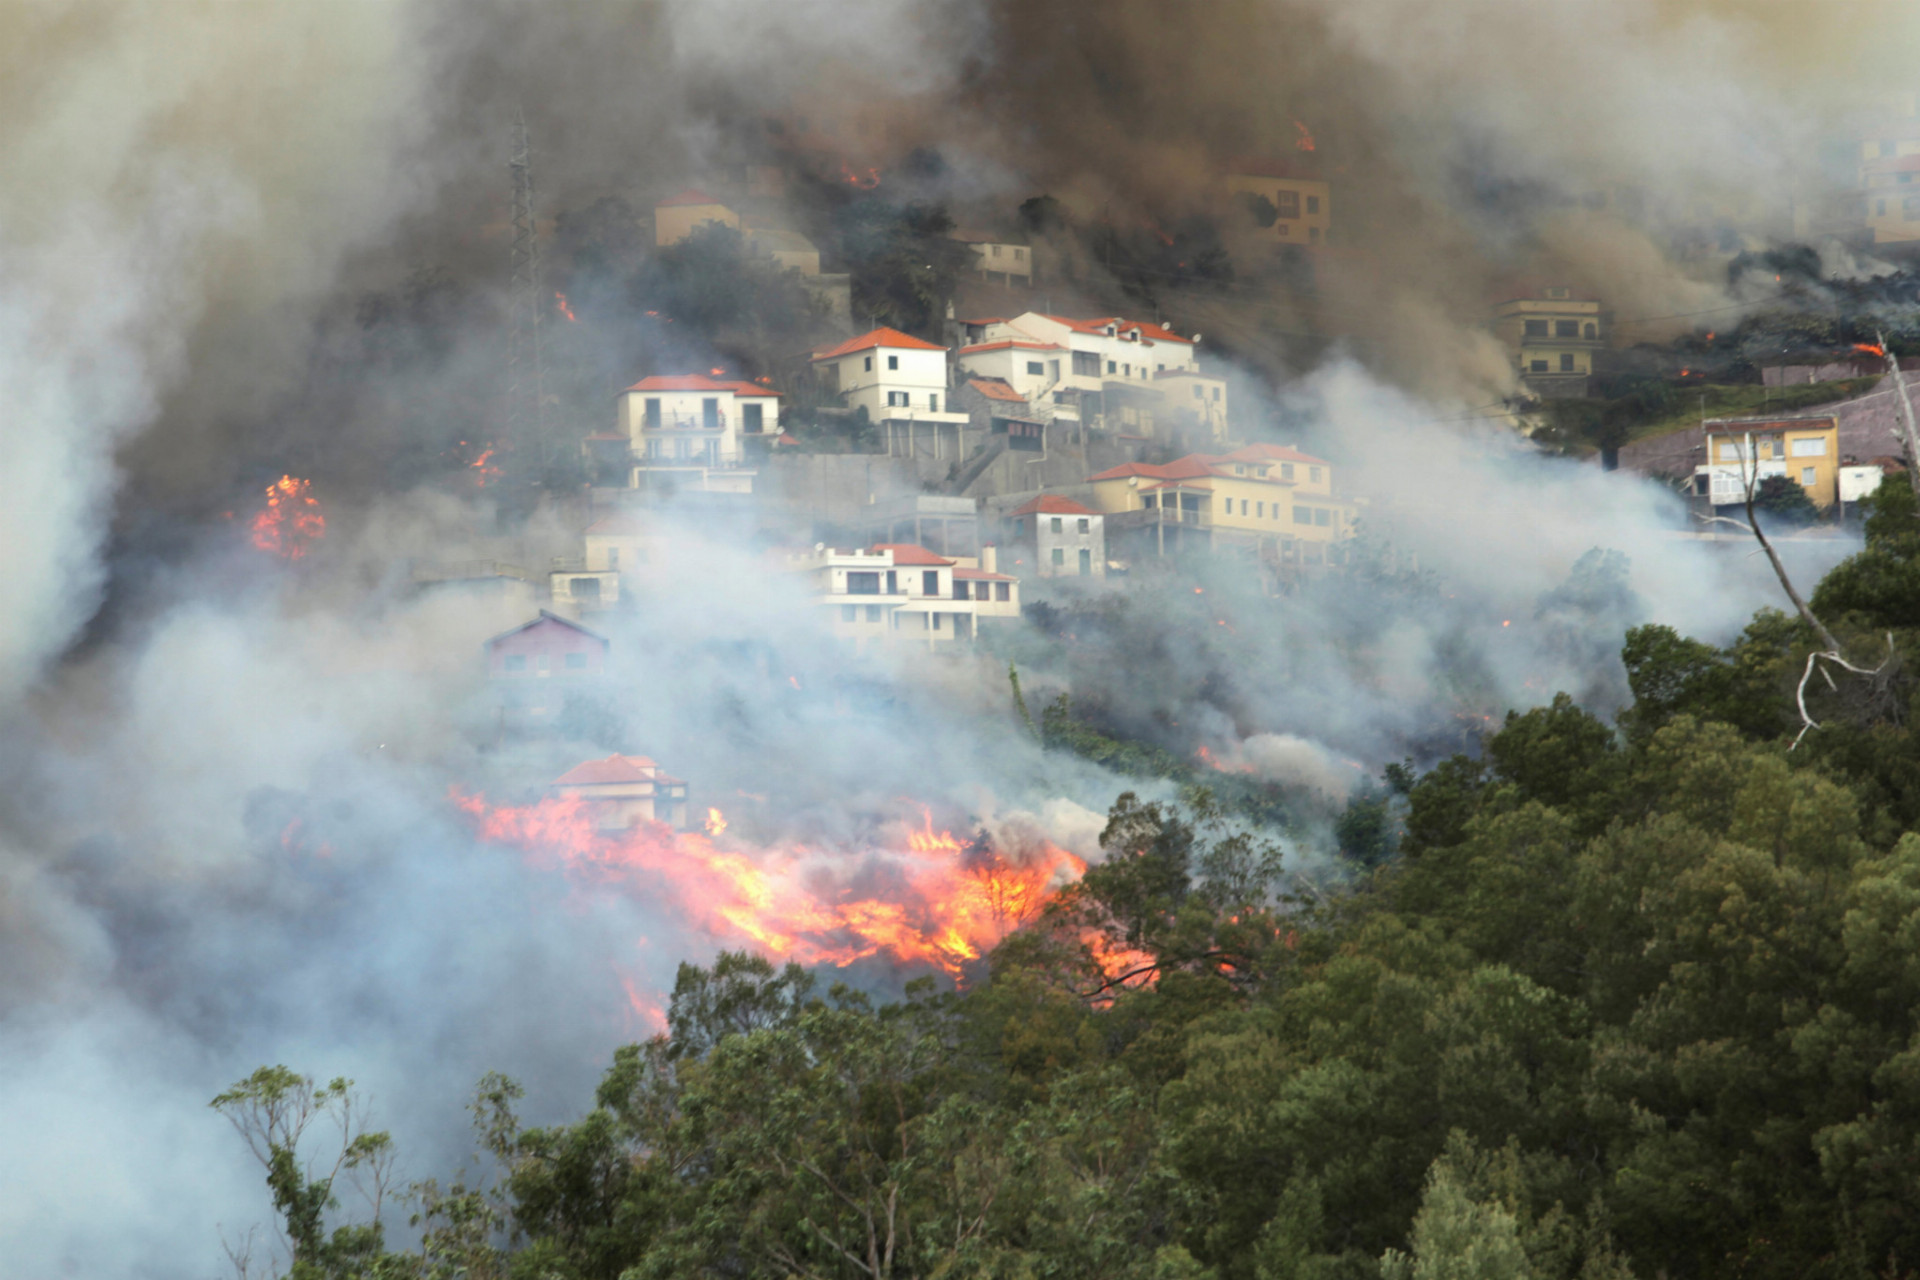 Les i okolité domy sú plameňoch.